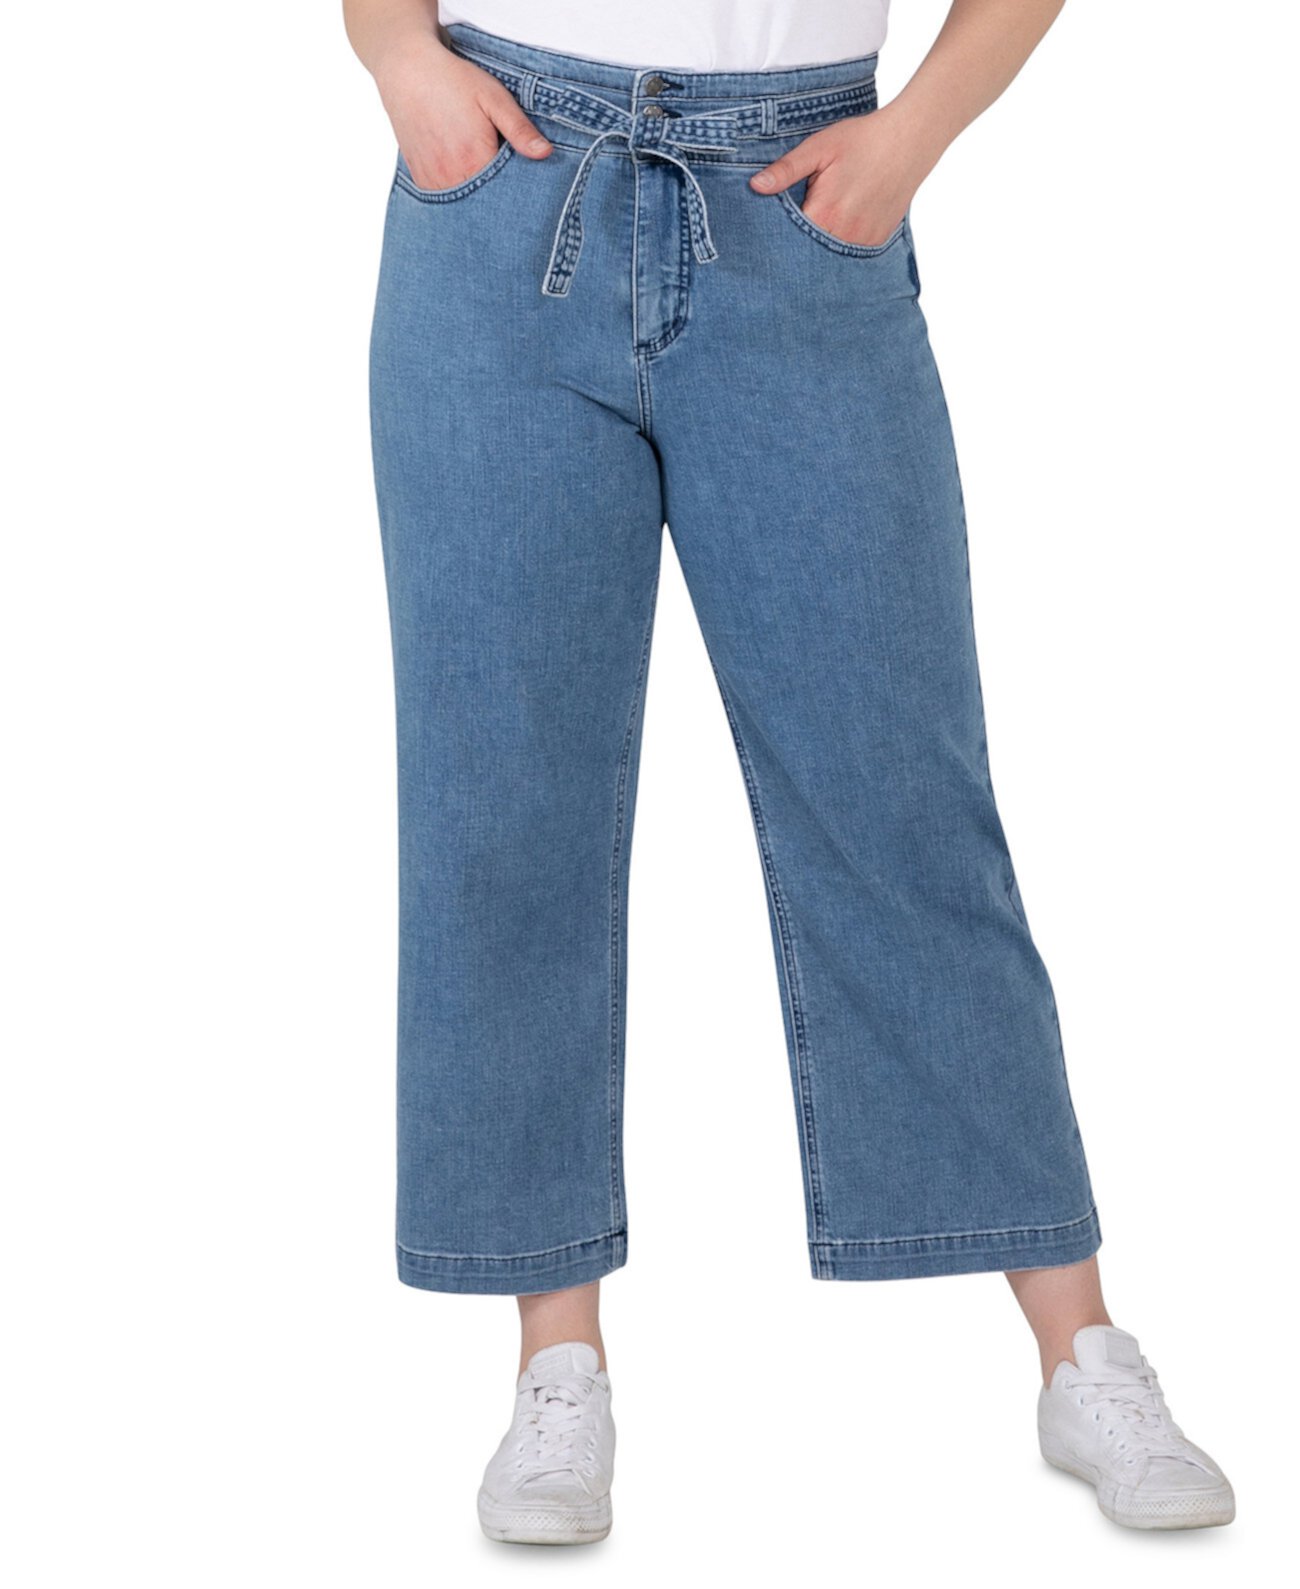 Укороченные джинсы большого размера с высокой посадкой и поясом Silver Jeans Co.